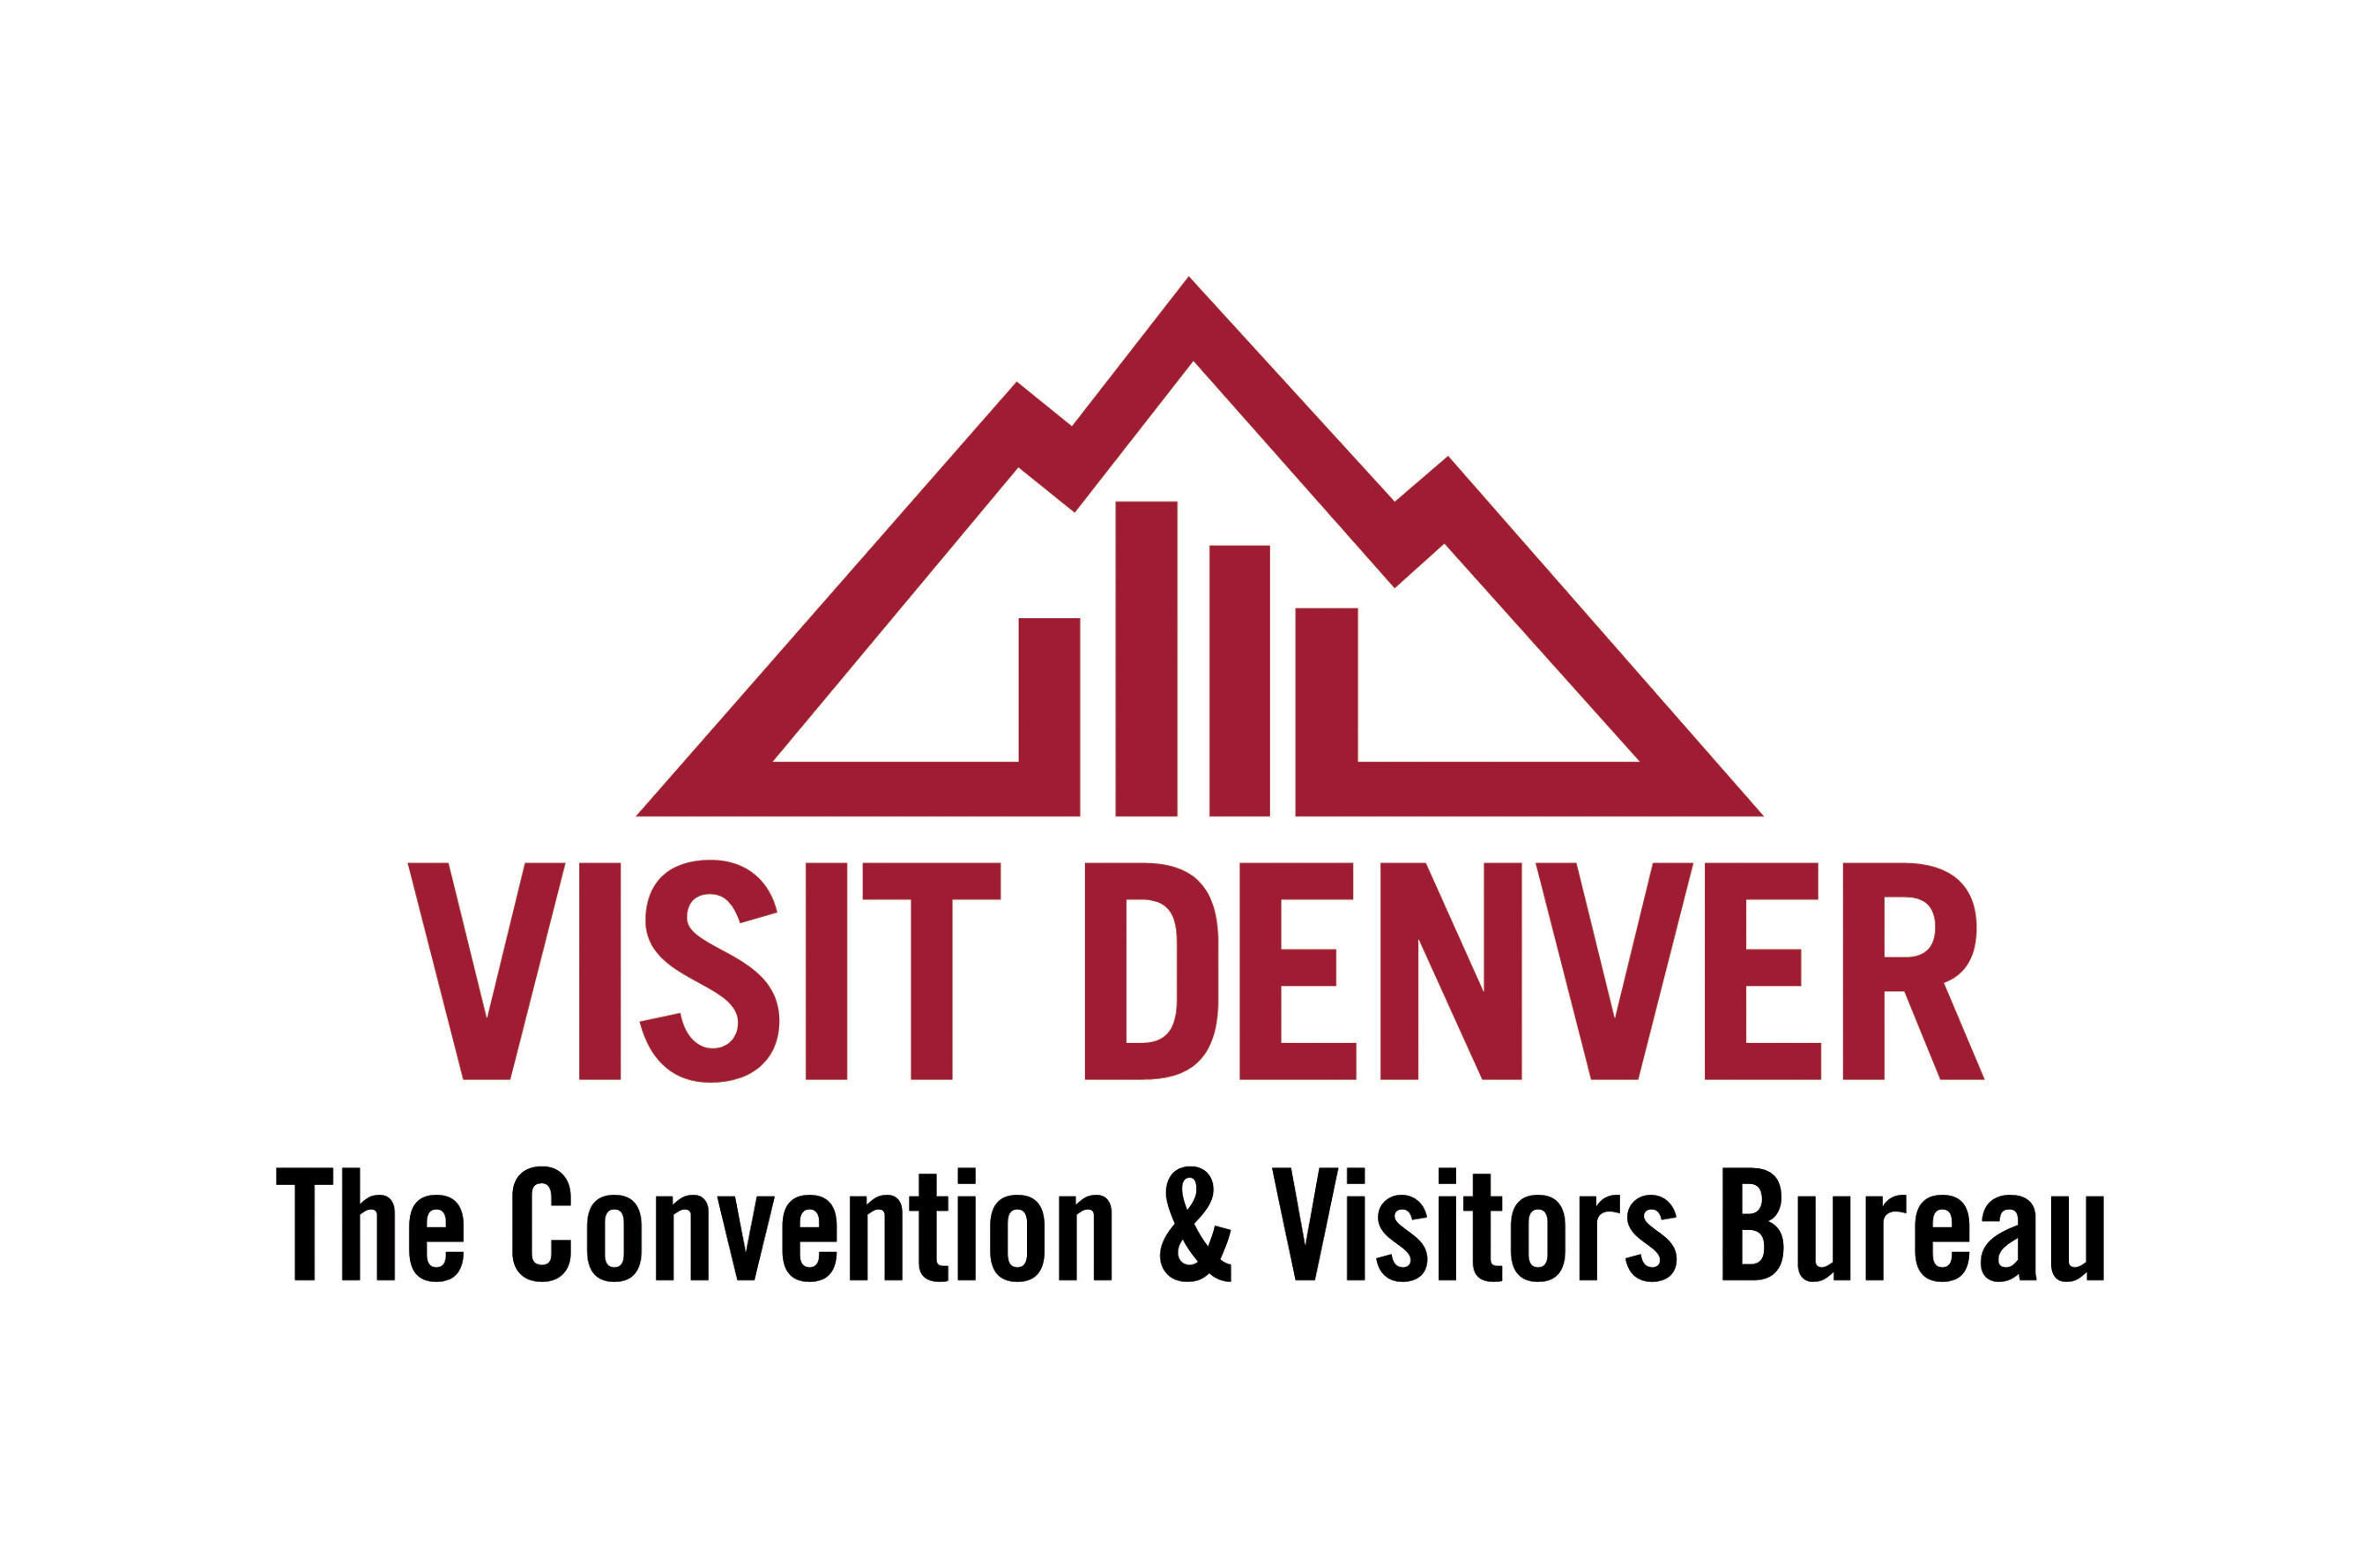 VISIT DENVER, The Convention & Visitors Bureau logo